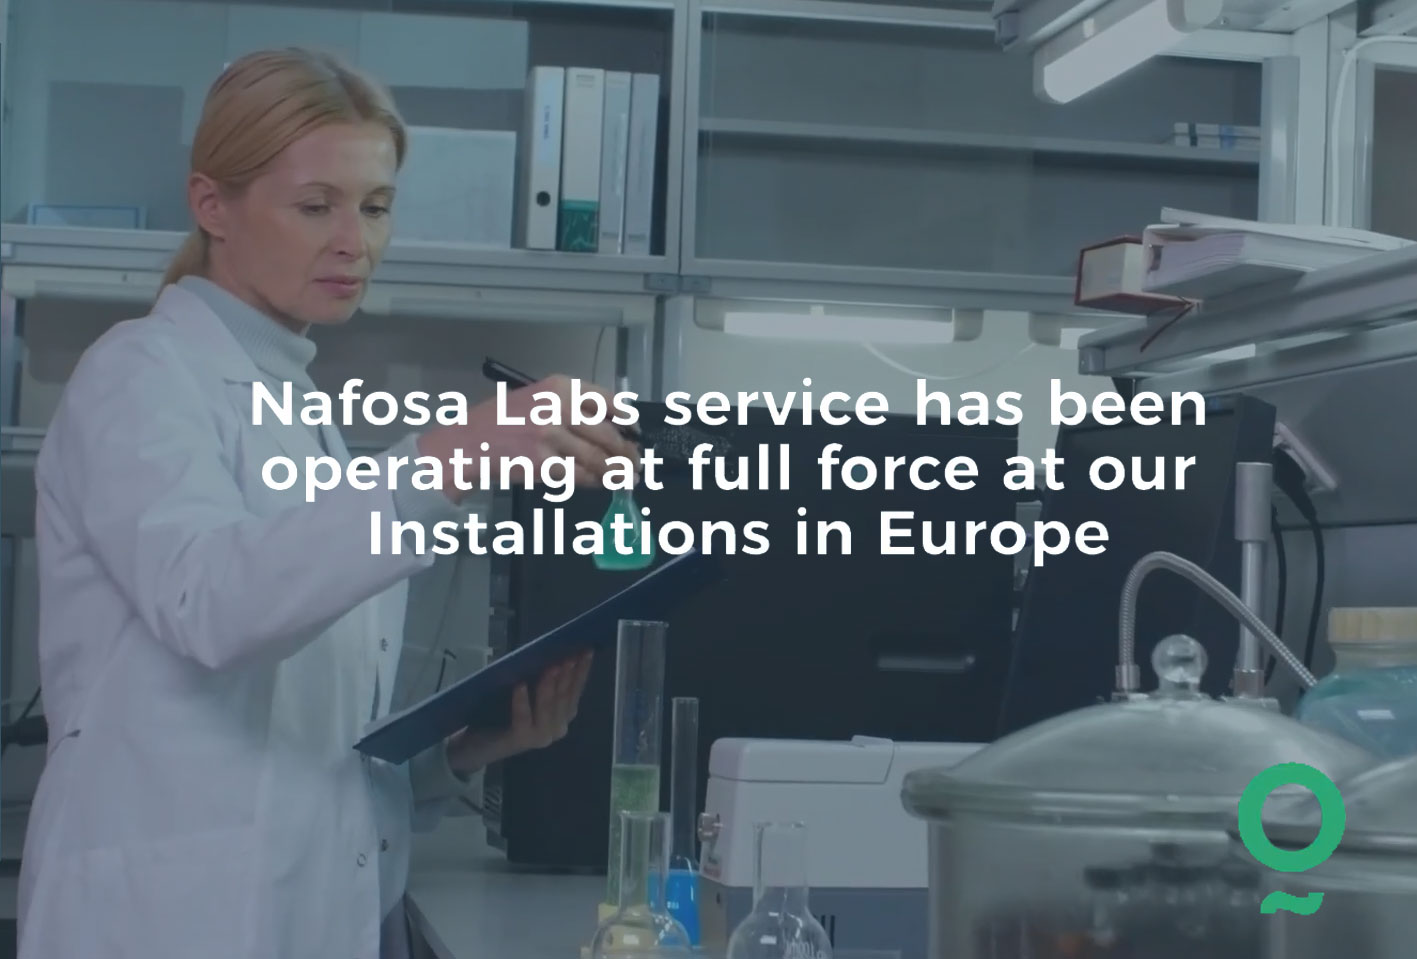 ¿Cómo contactar con los servicios de Nafosa Labs & Dairy One?